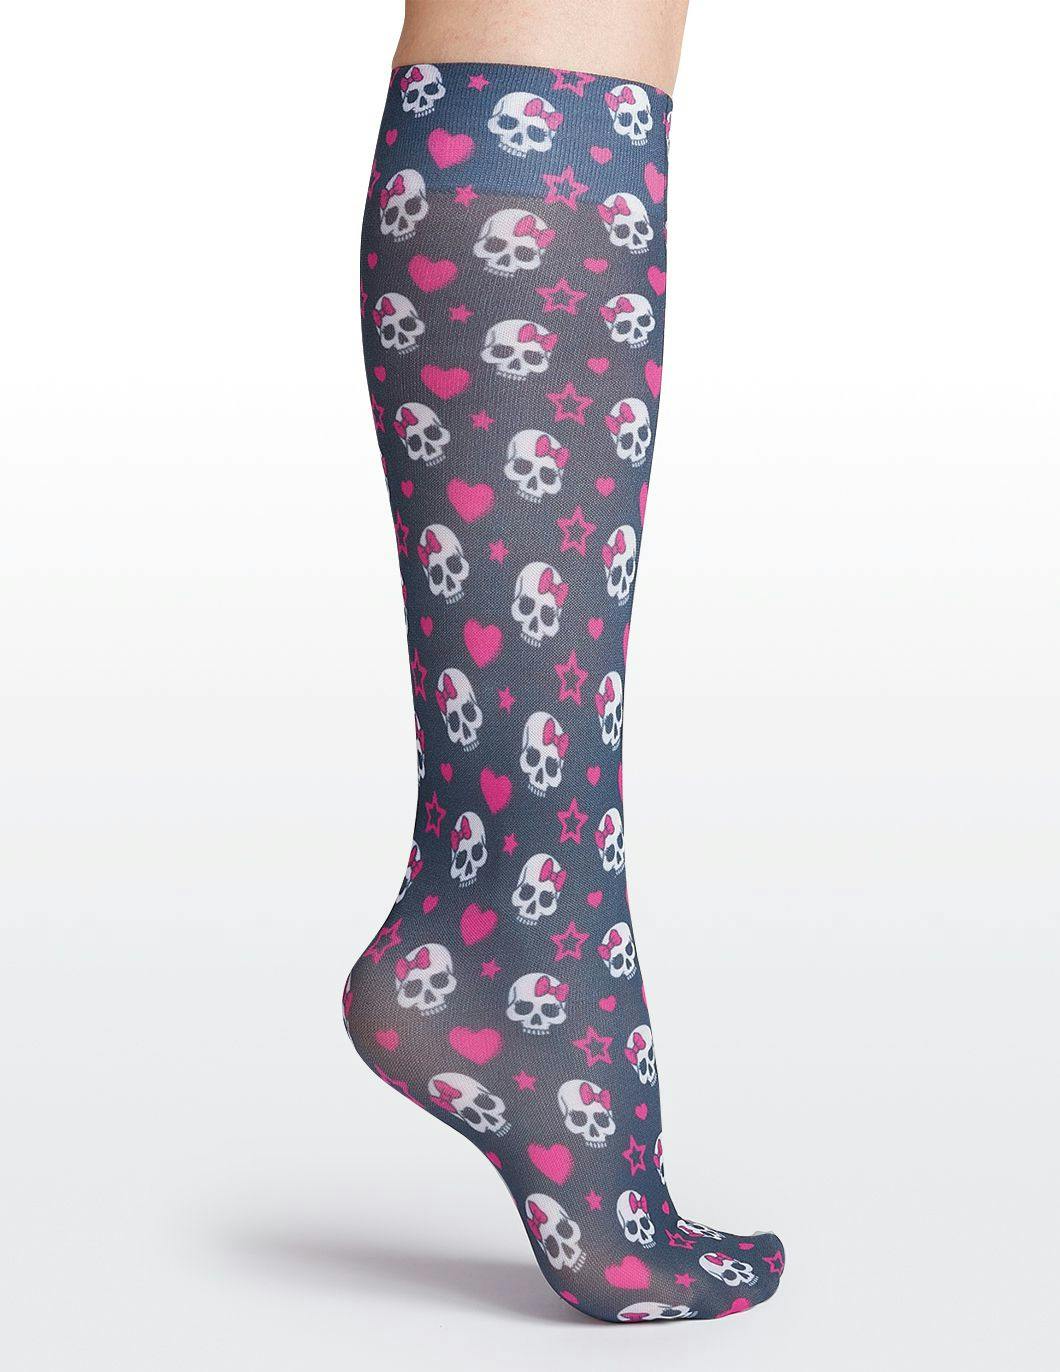 cutieful-compression-socks-8-15-mmhg-black-skulls-print